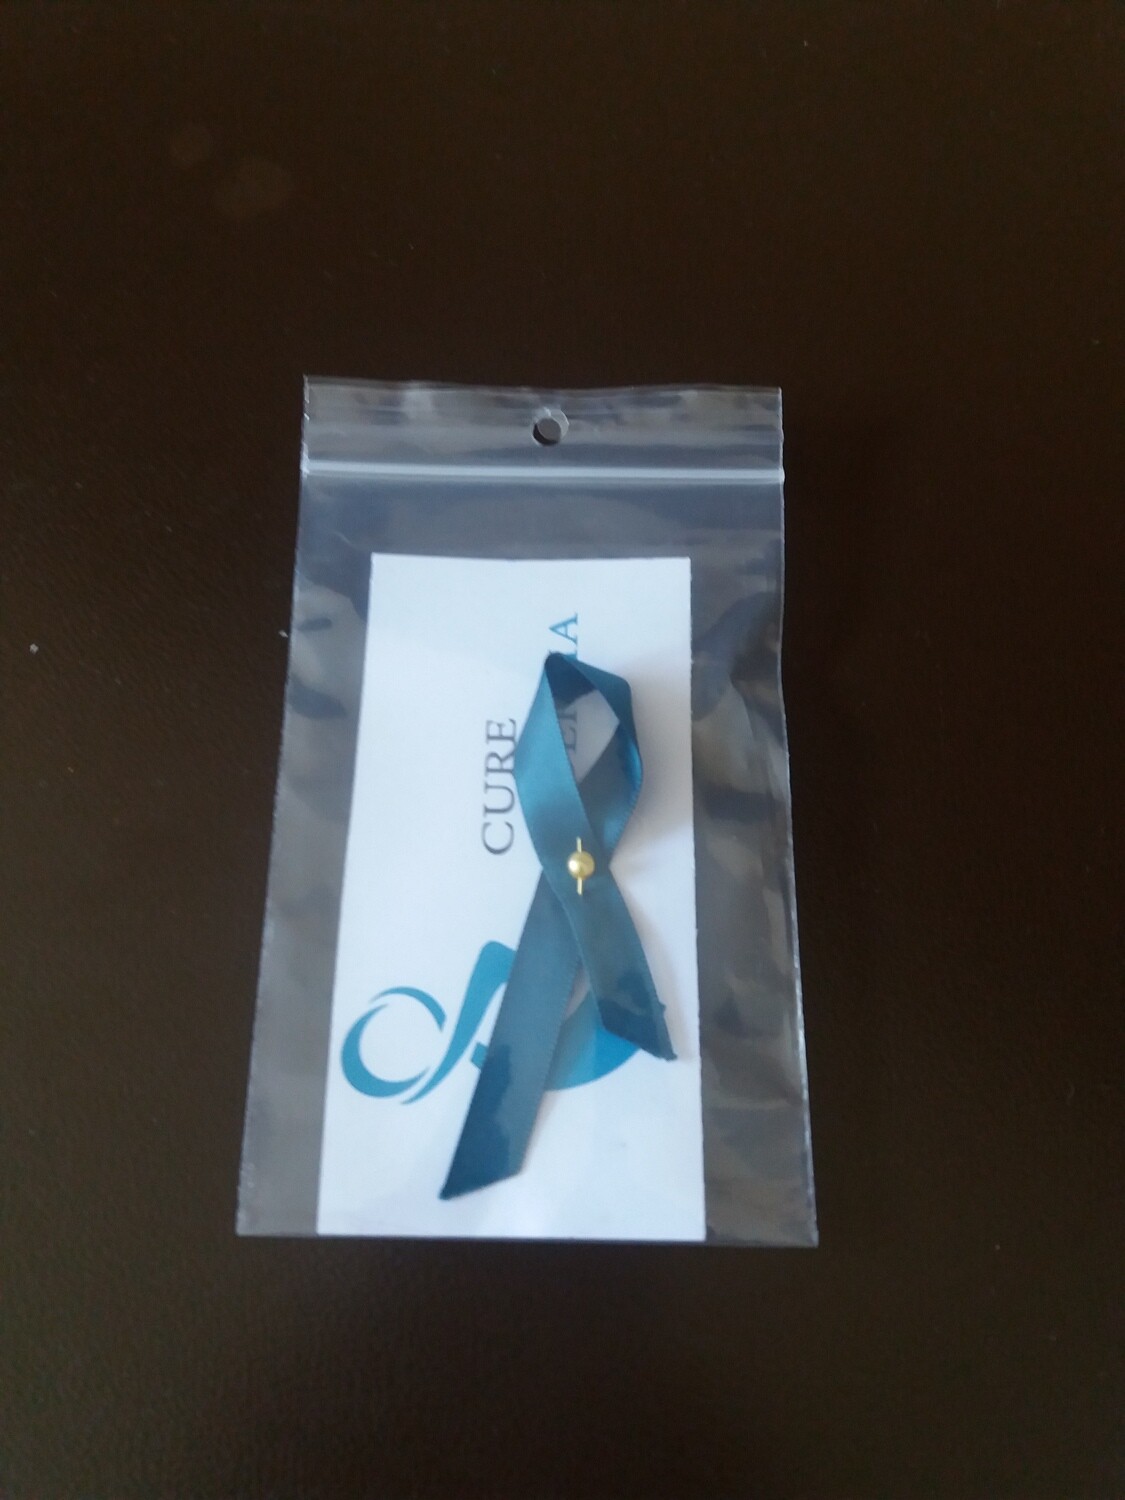 Steunlintje 
(Ansteckschleifchen)  
[Charity ribbon]